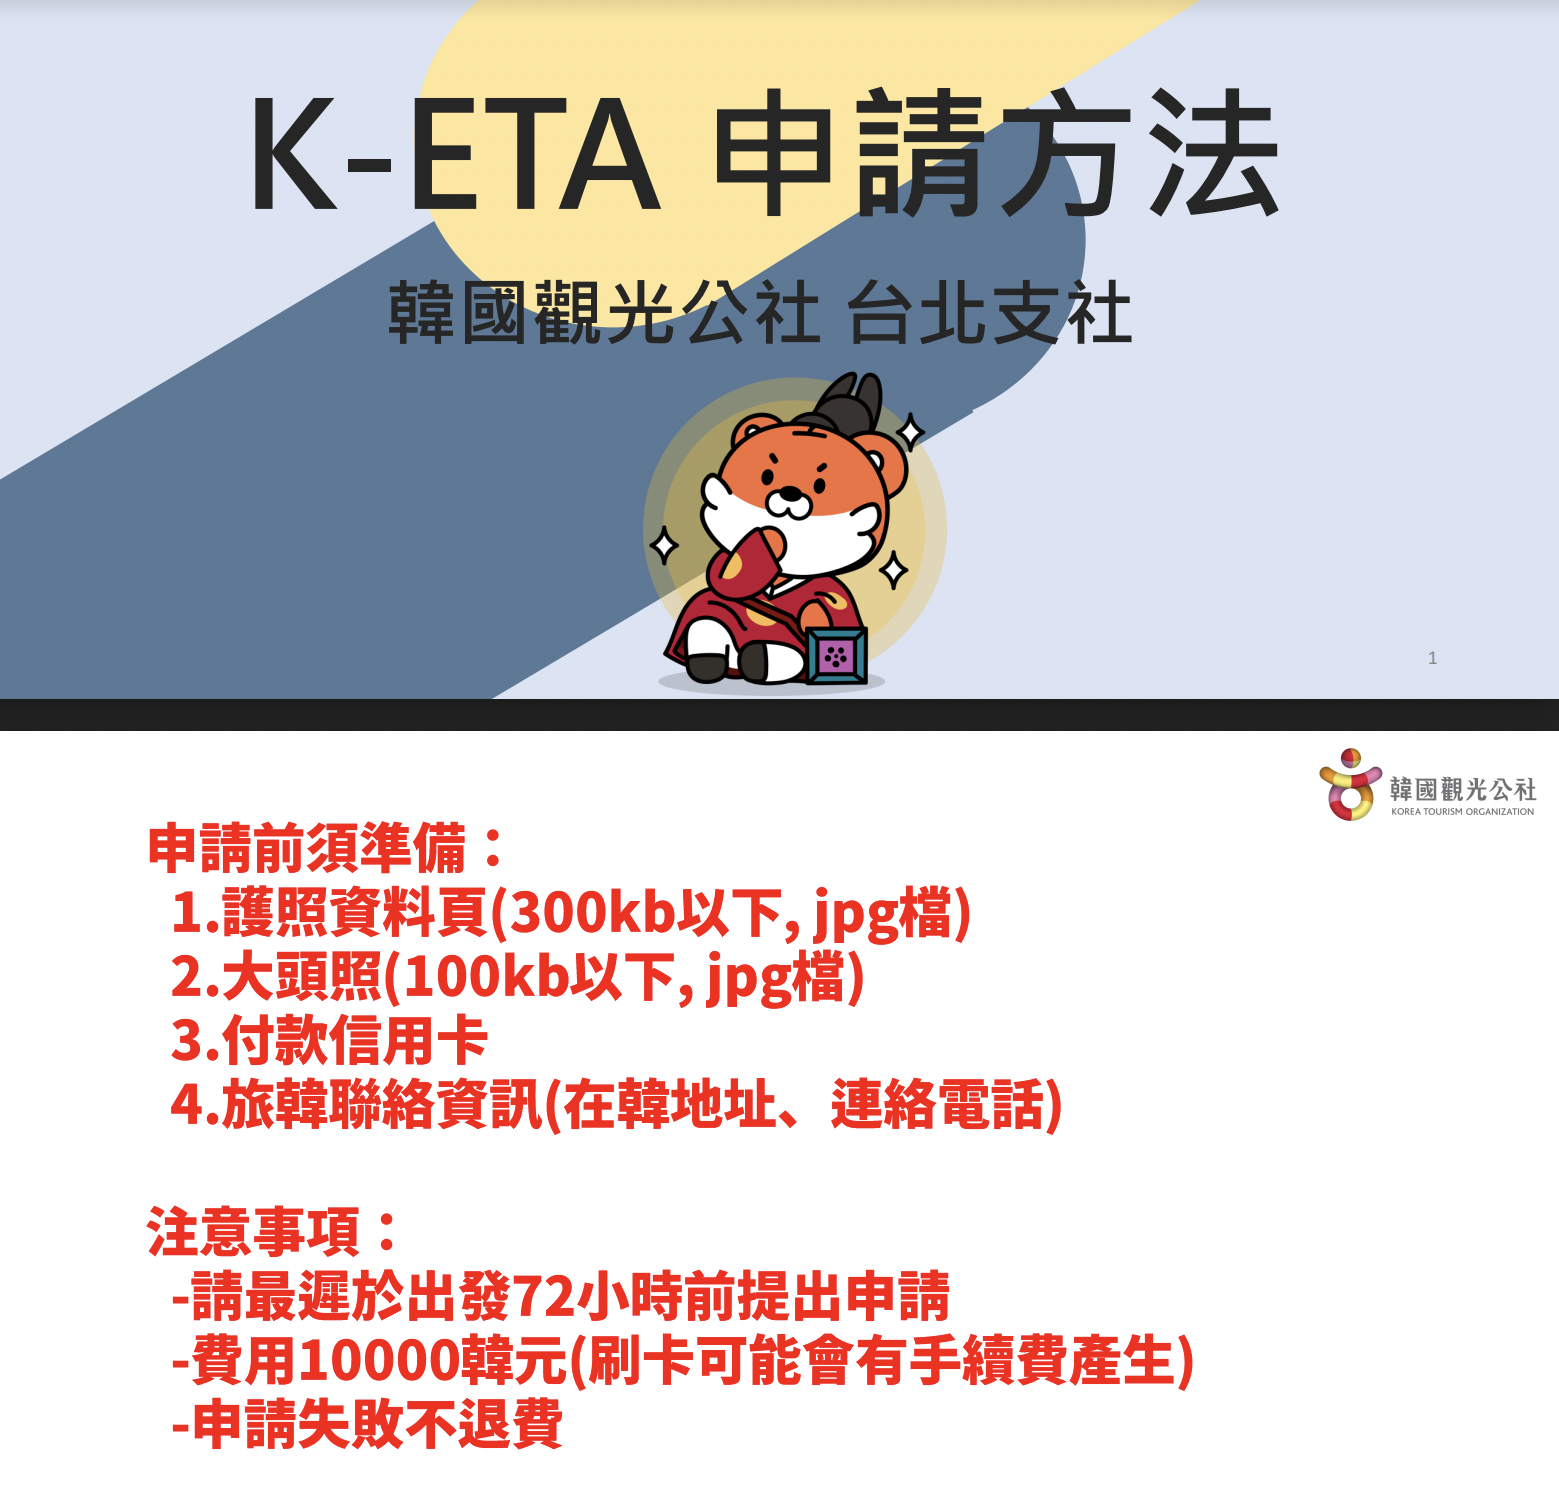 【韓國簽證2023】K-ETA申請教學入境許可｜韓國免隔離、免PCR篩檢｜線上填寫QRCODE教學更快入境！在韓國確診怎麼辦？ @GINA環球旅行生活